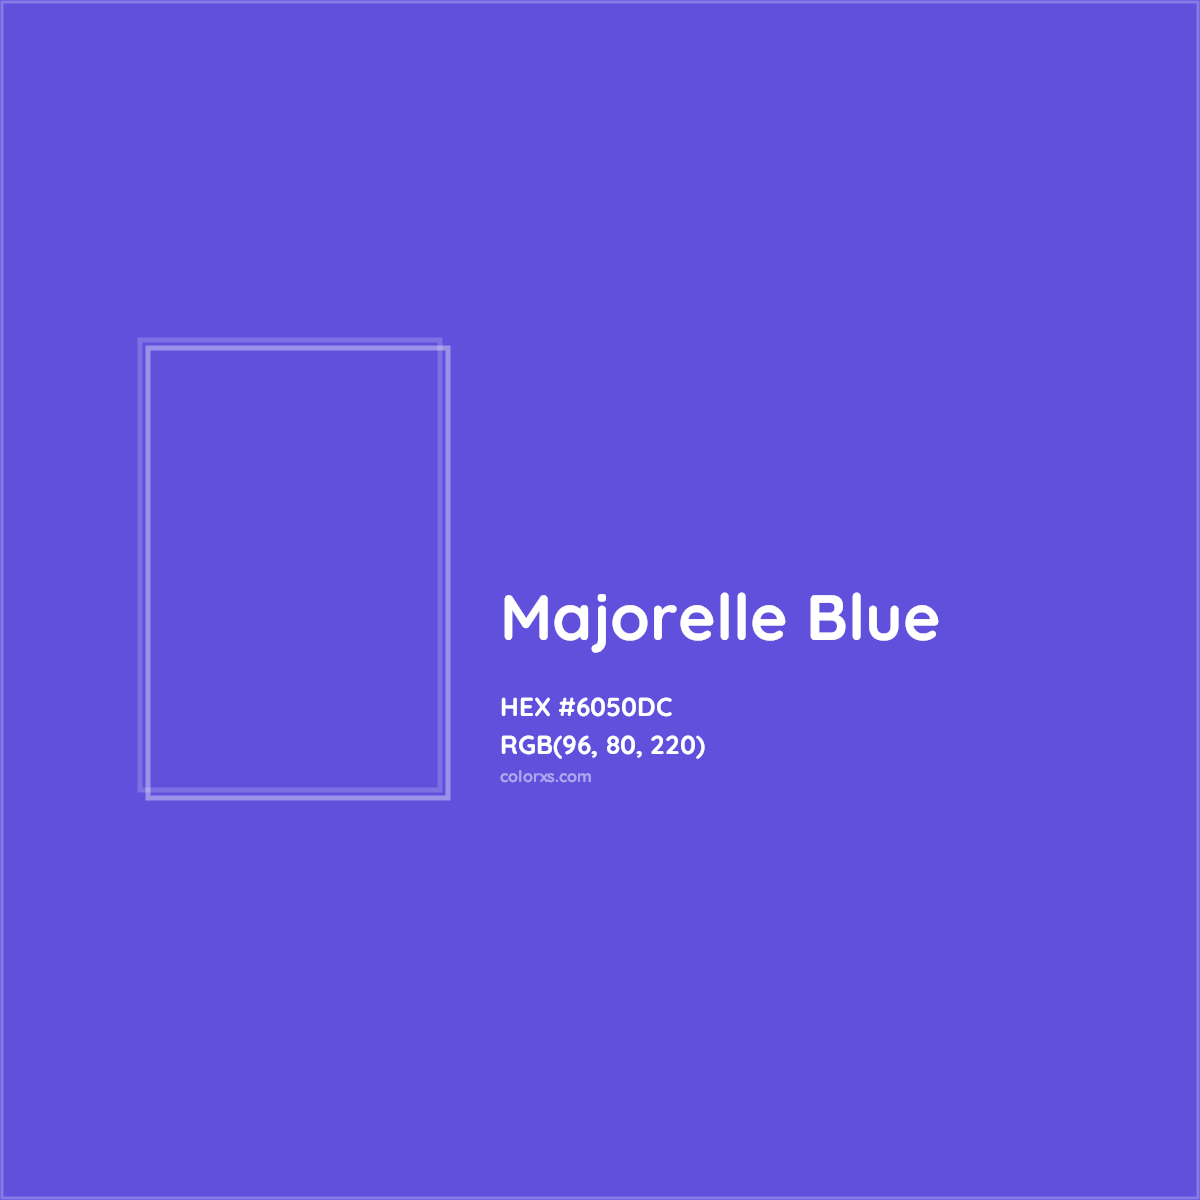 HEX #6050DC Majorelle Blue Color - Color Code